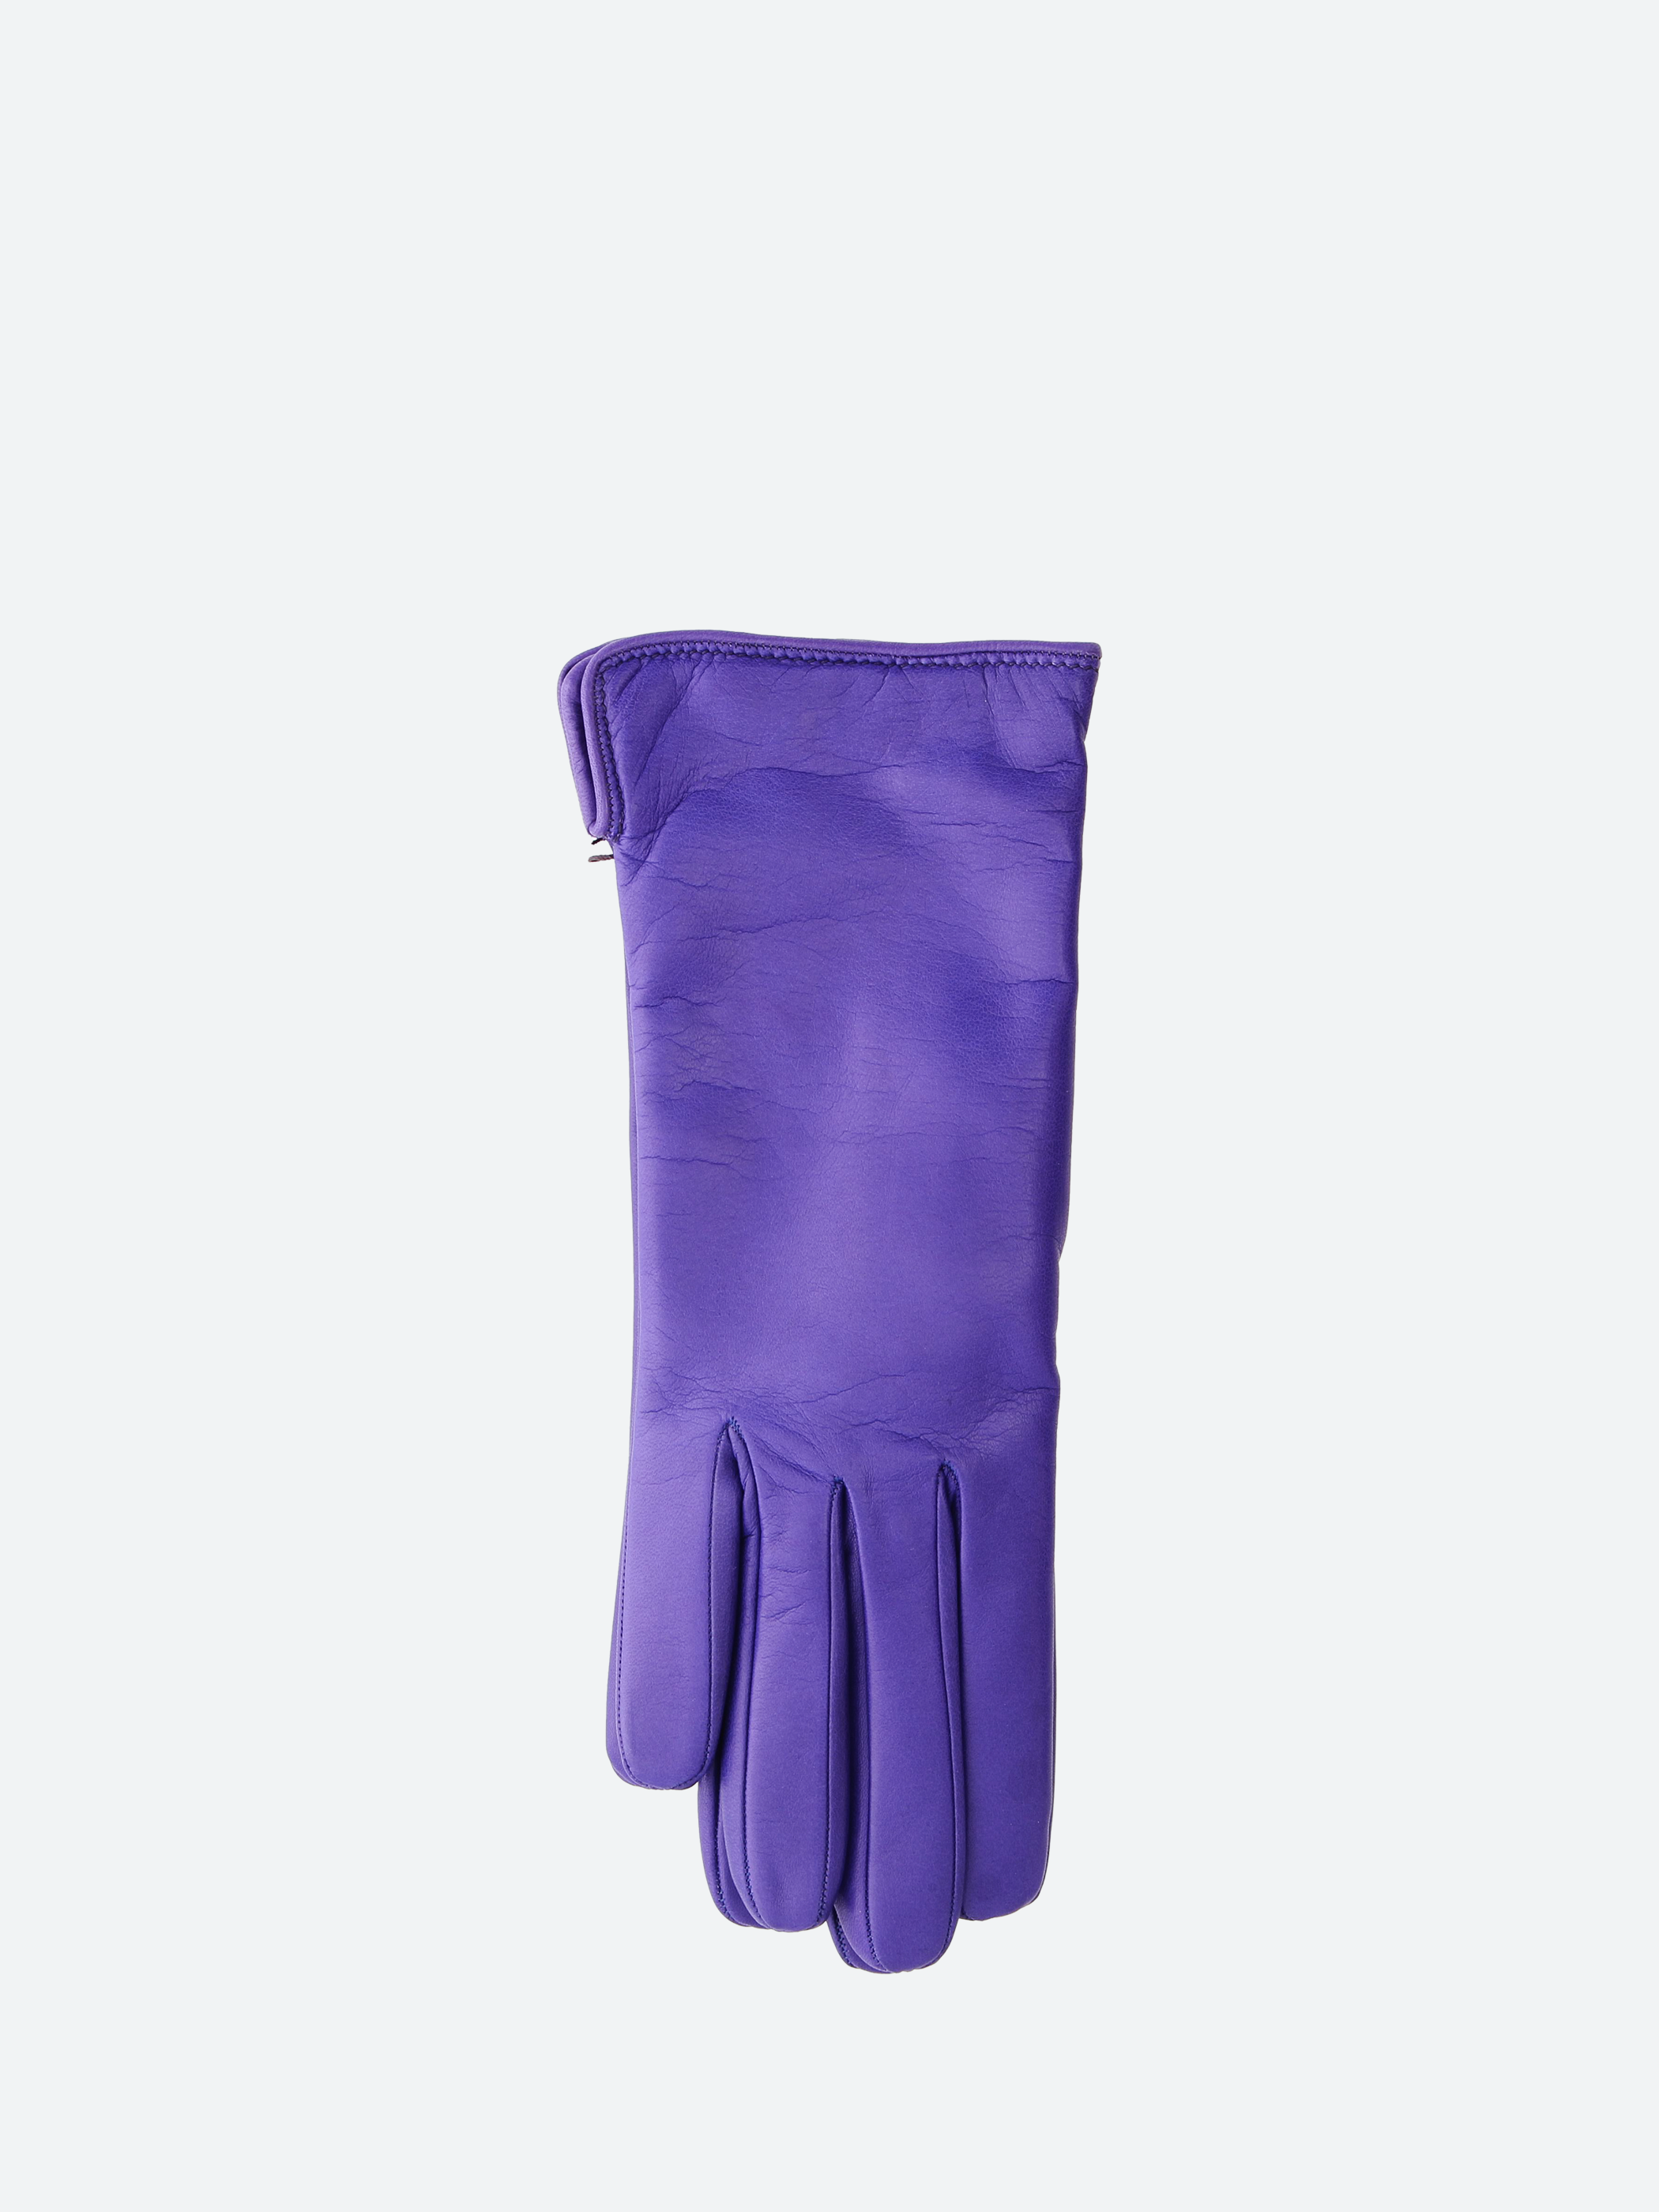 2777 Nappa Short Gloves